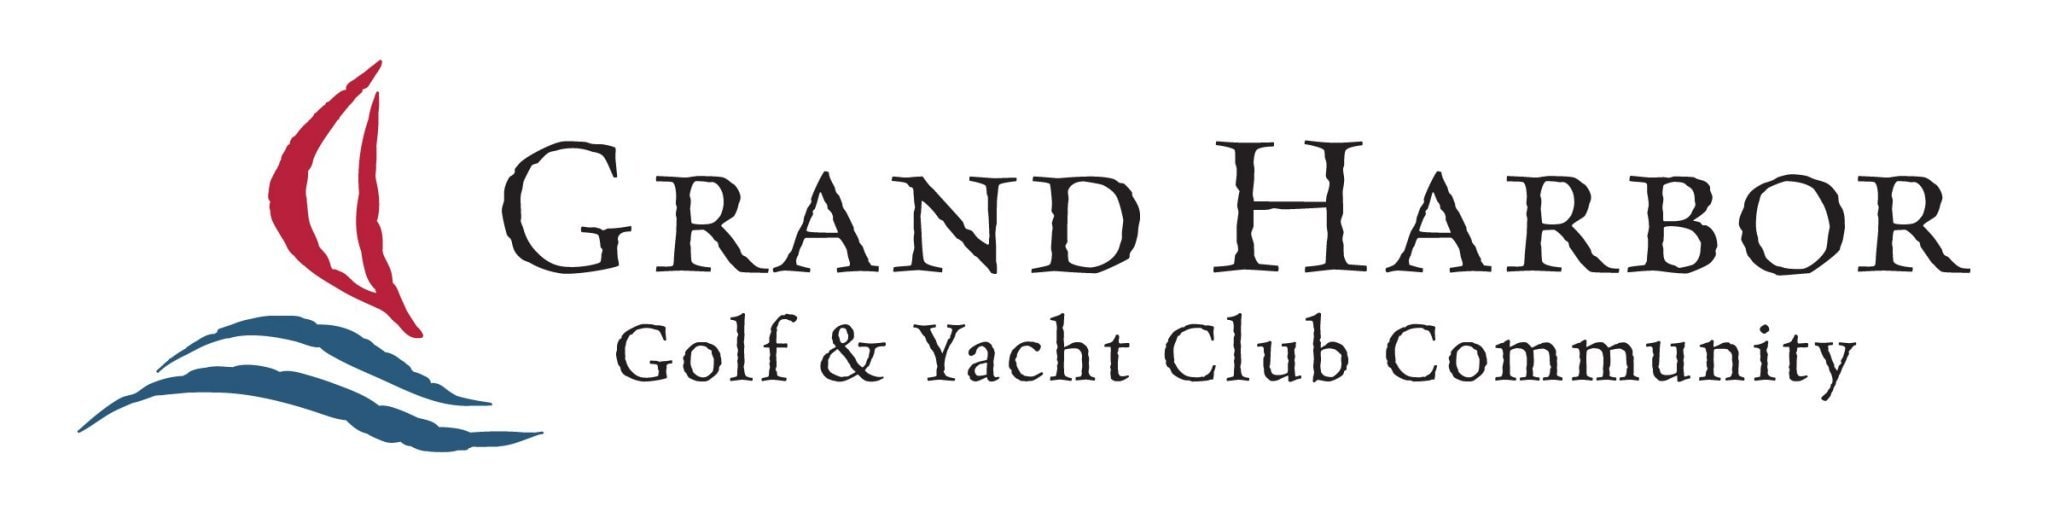 gc yacht club